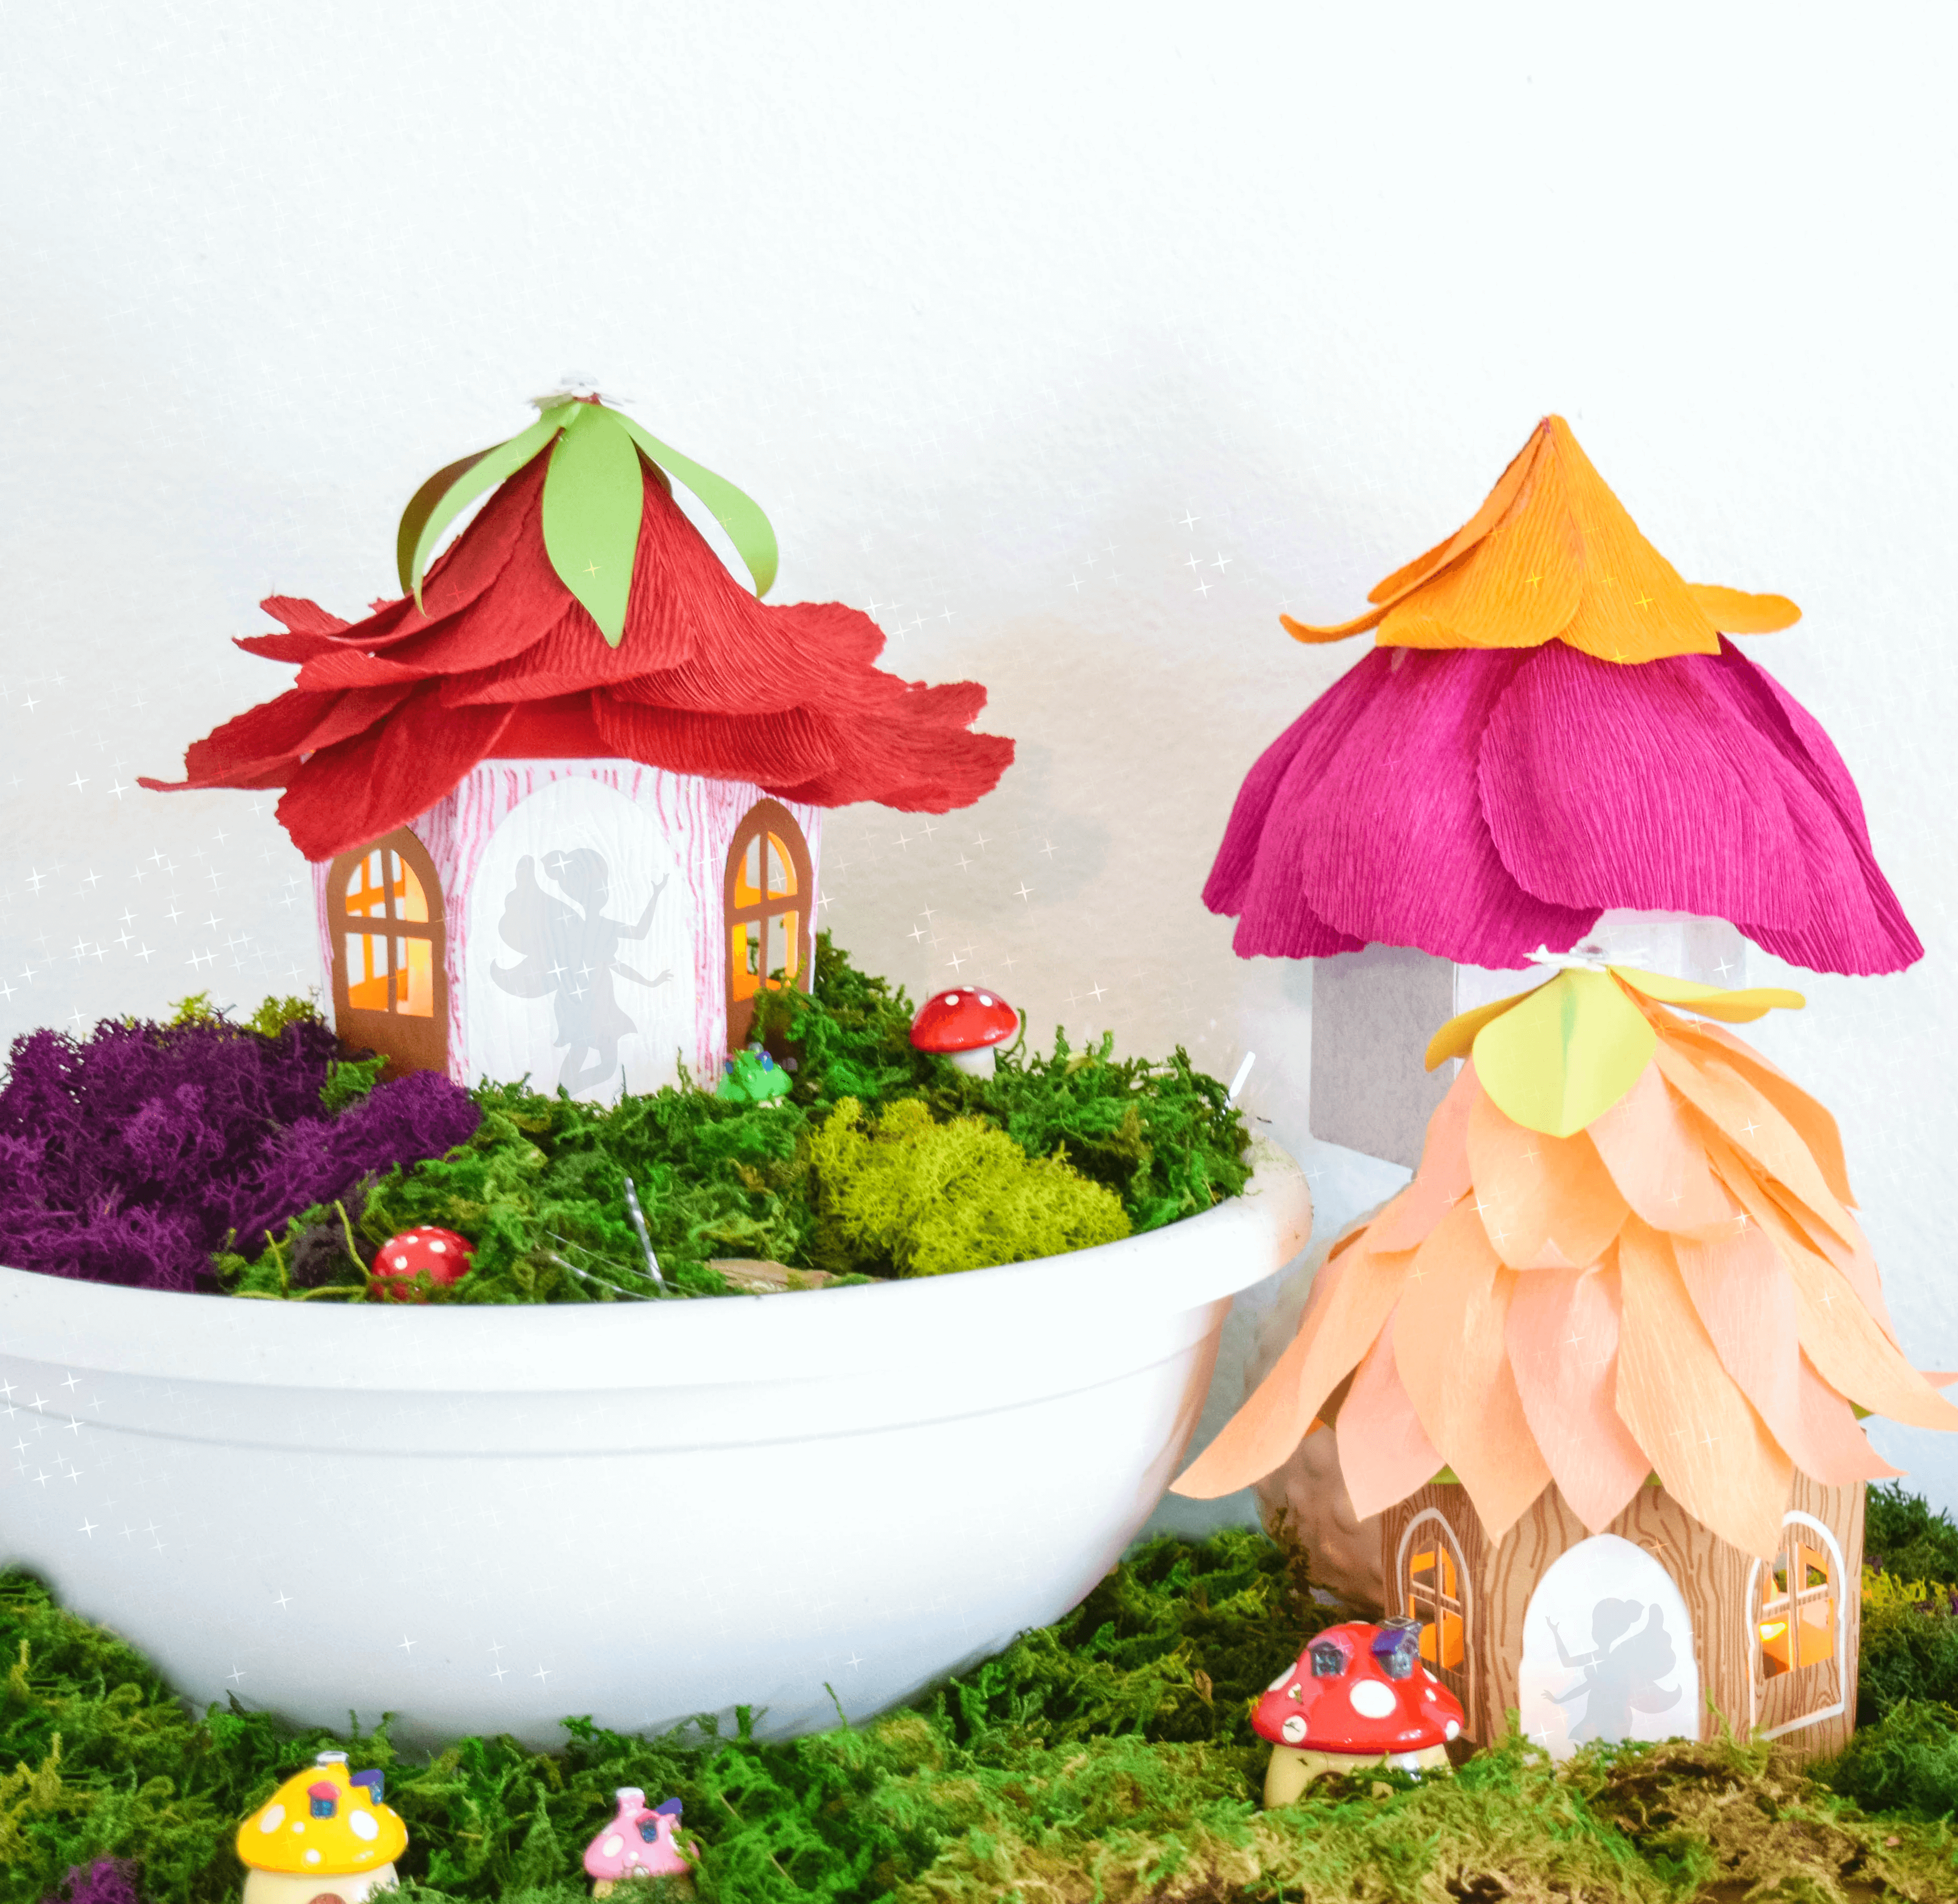 Kitchen Floor Crafts: Wax Paper Flower Garden